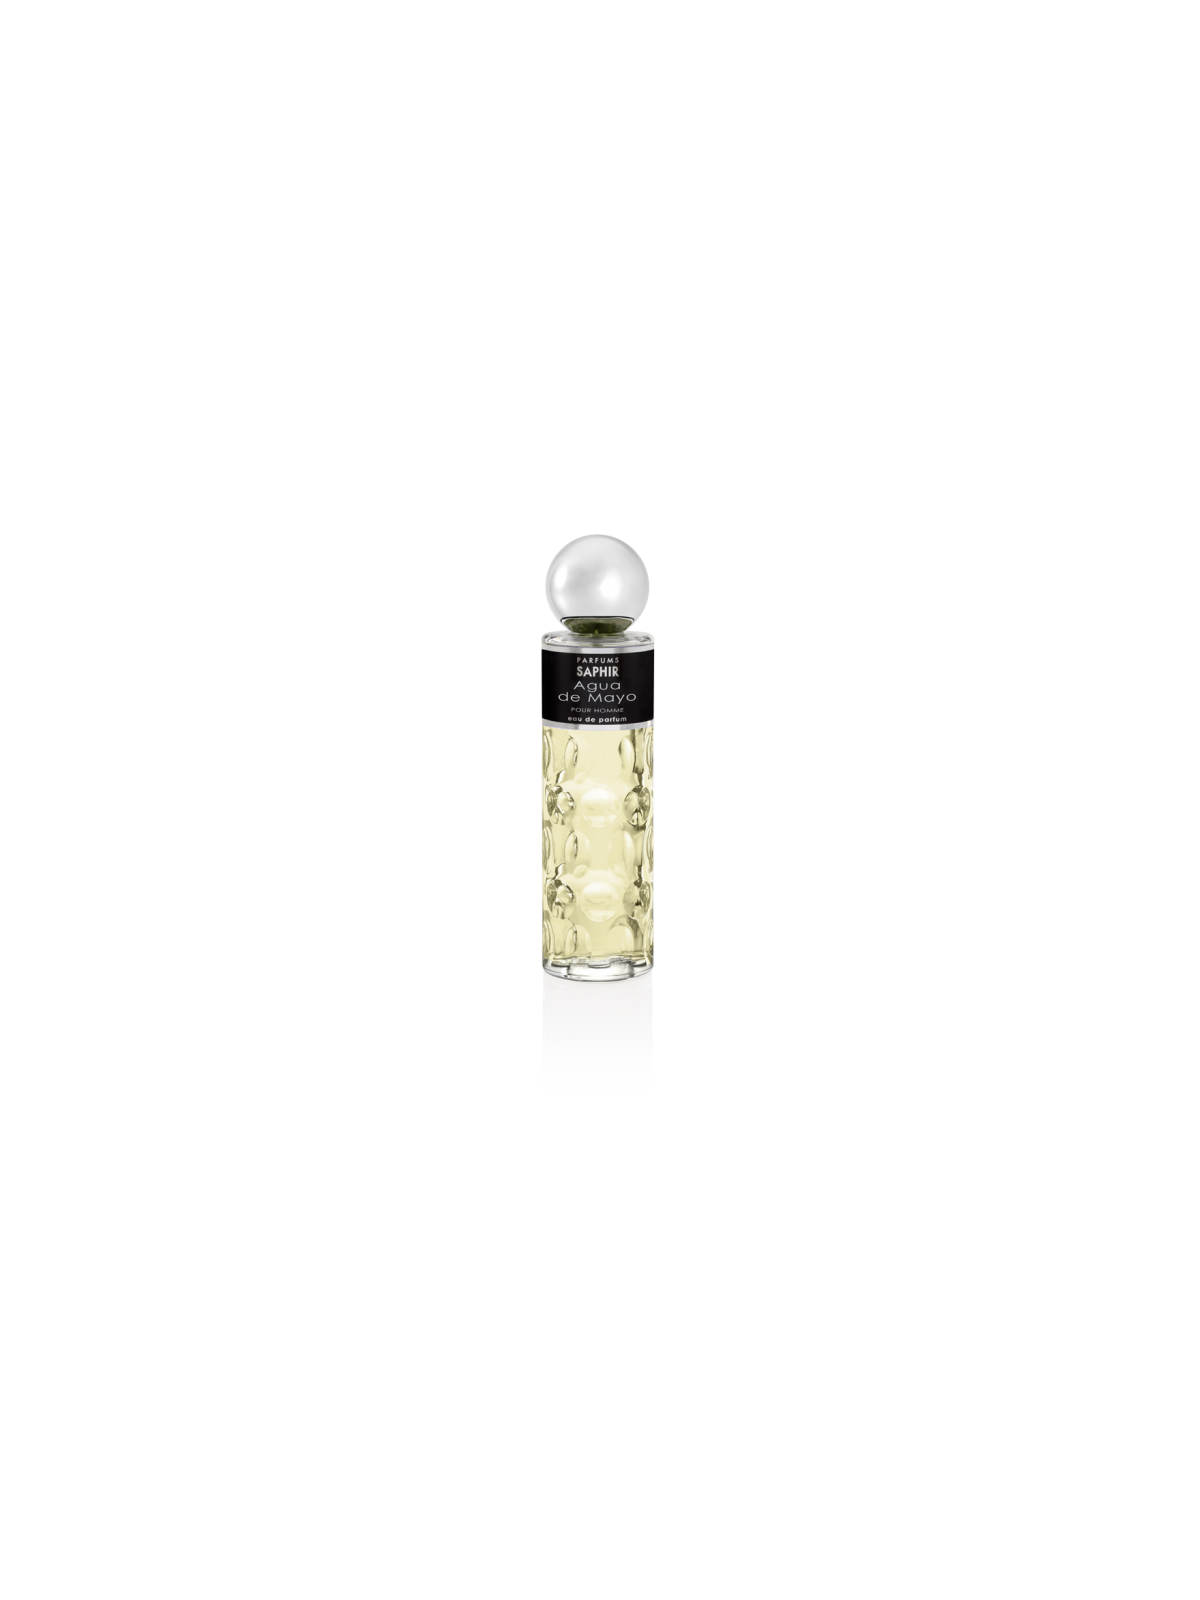 Comprar Perfume Saphir Agua de Mayo Hombre 200ML. en Perfumes para hombre por sólo 12,90 € o un precio específico de 12,90 € en Thalie Care